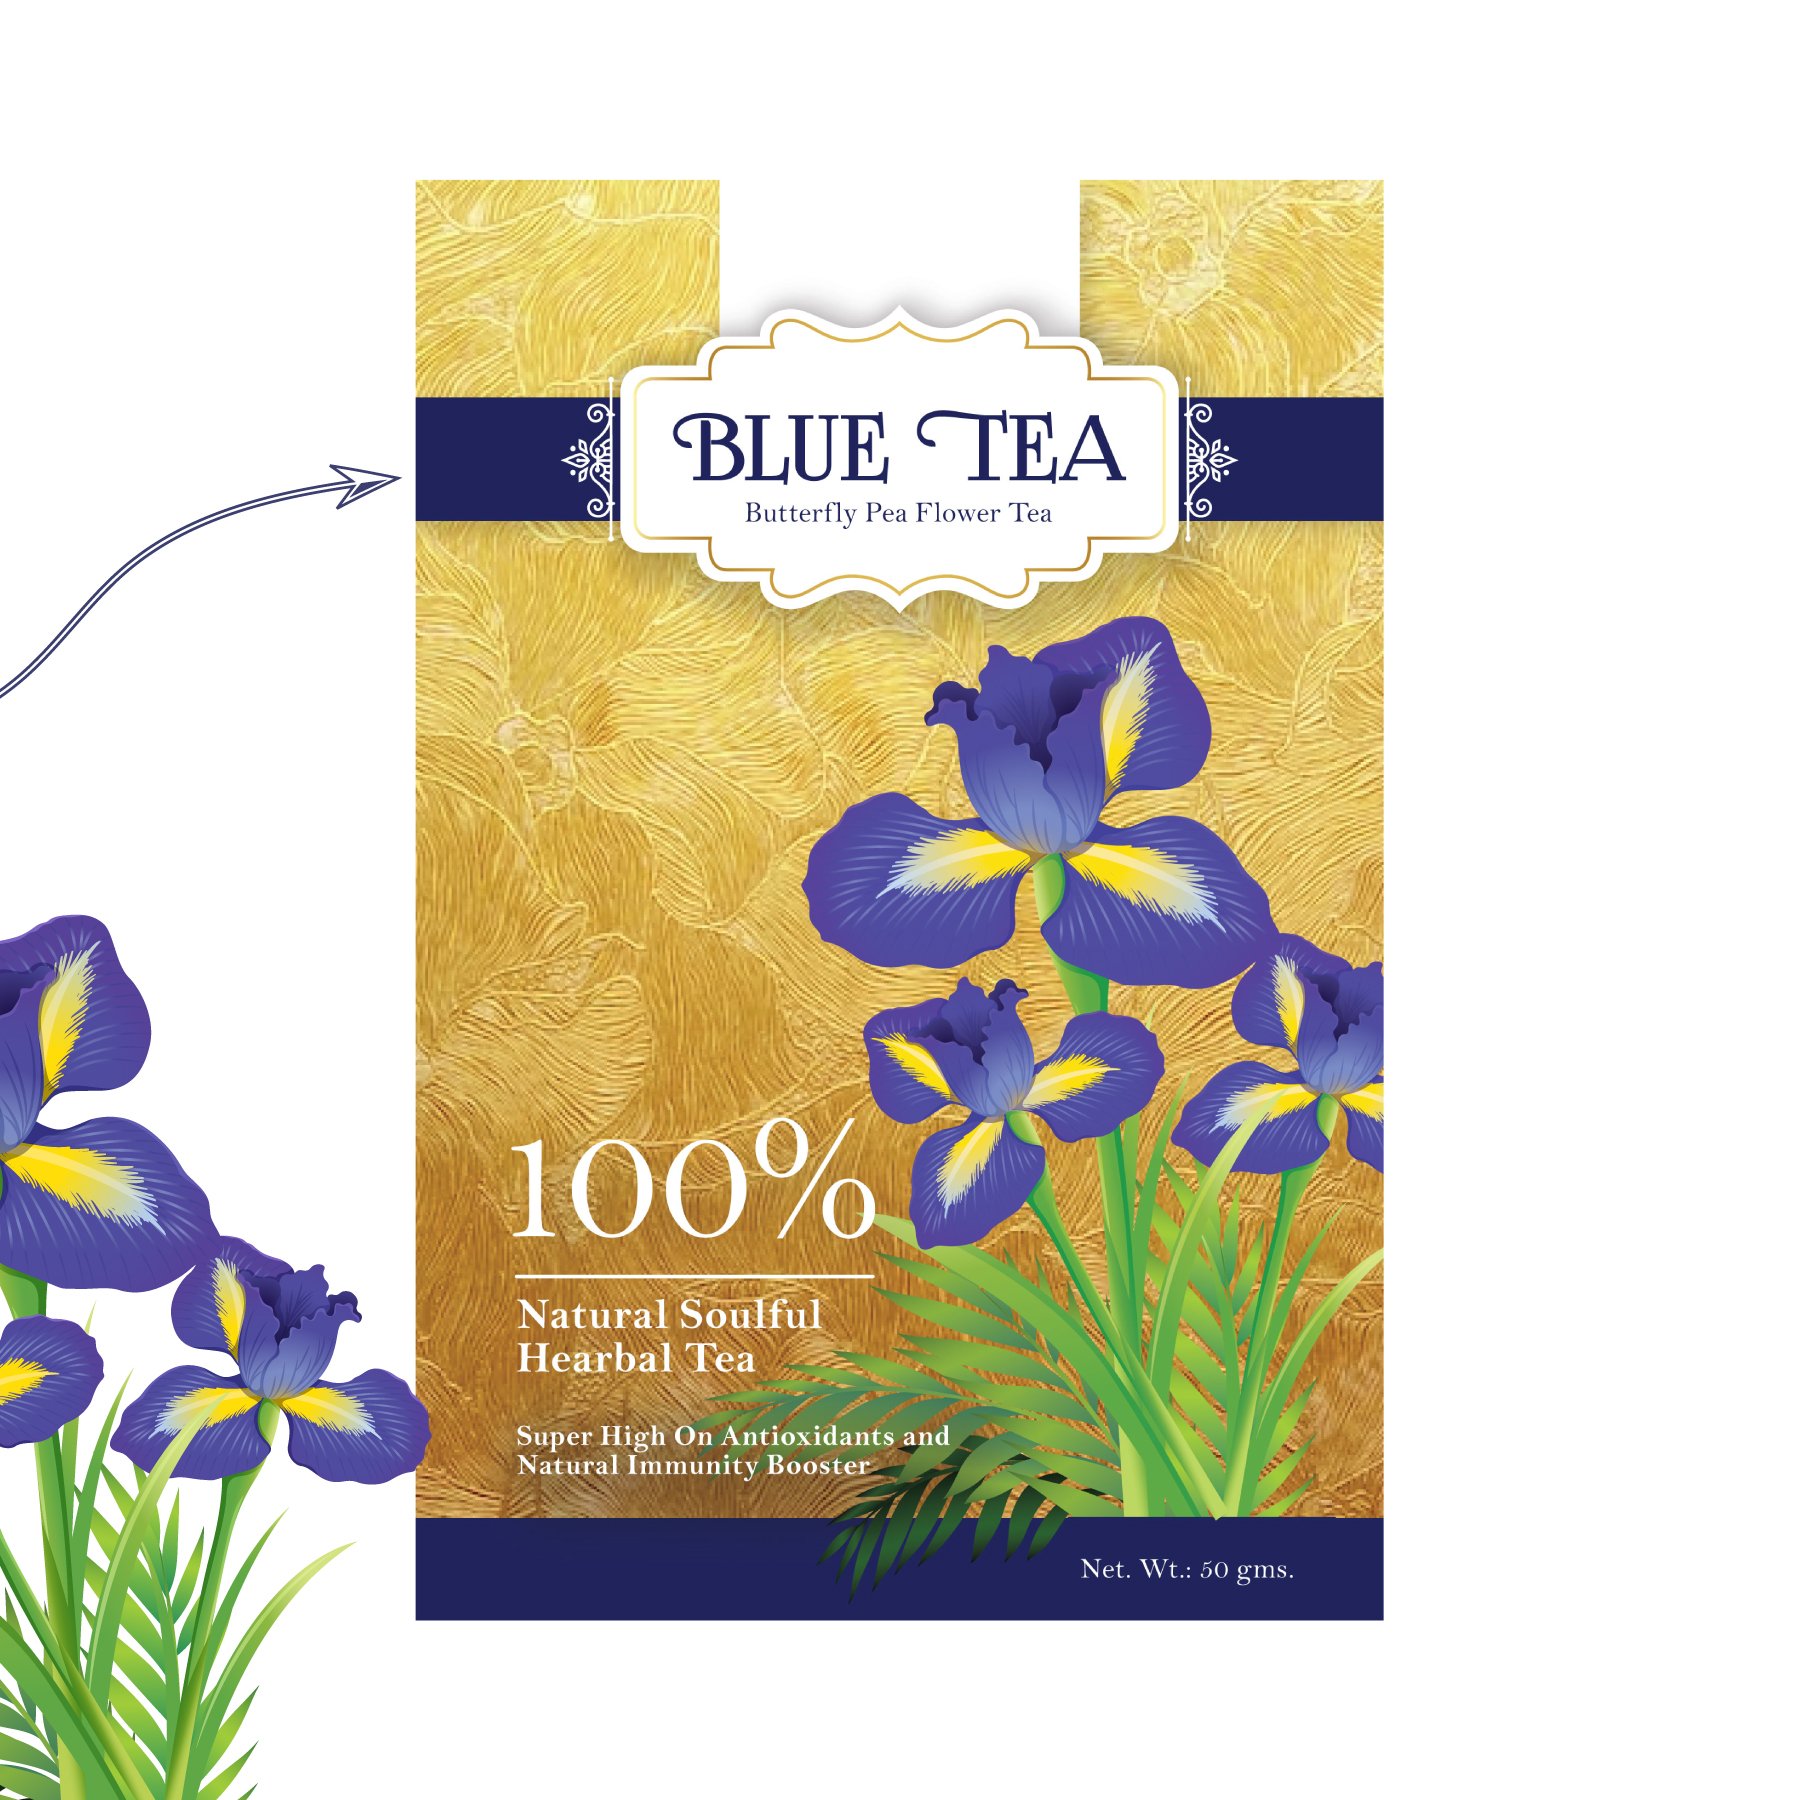 TBT-Blue-tea-2.jpg